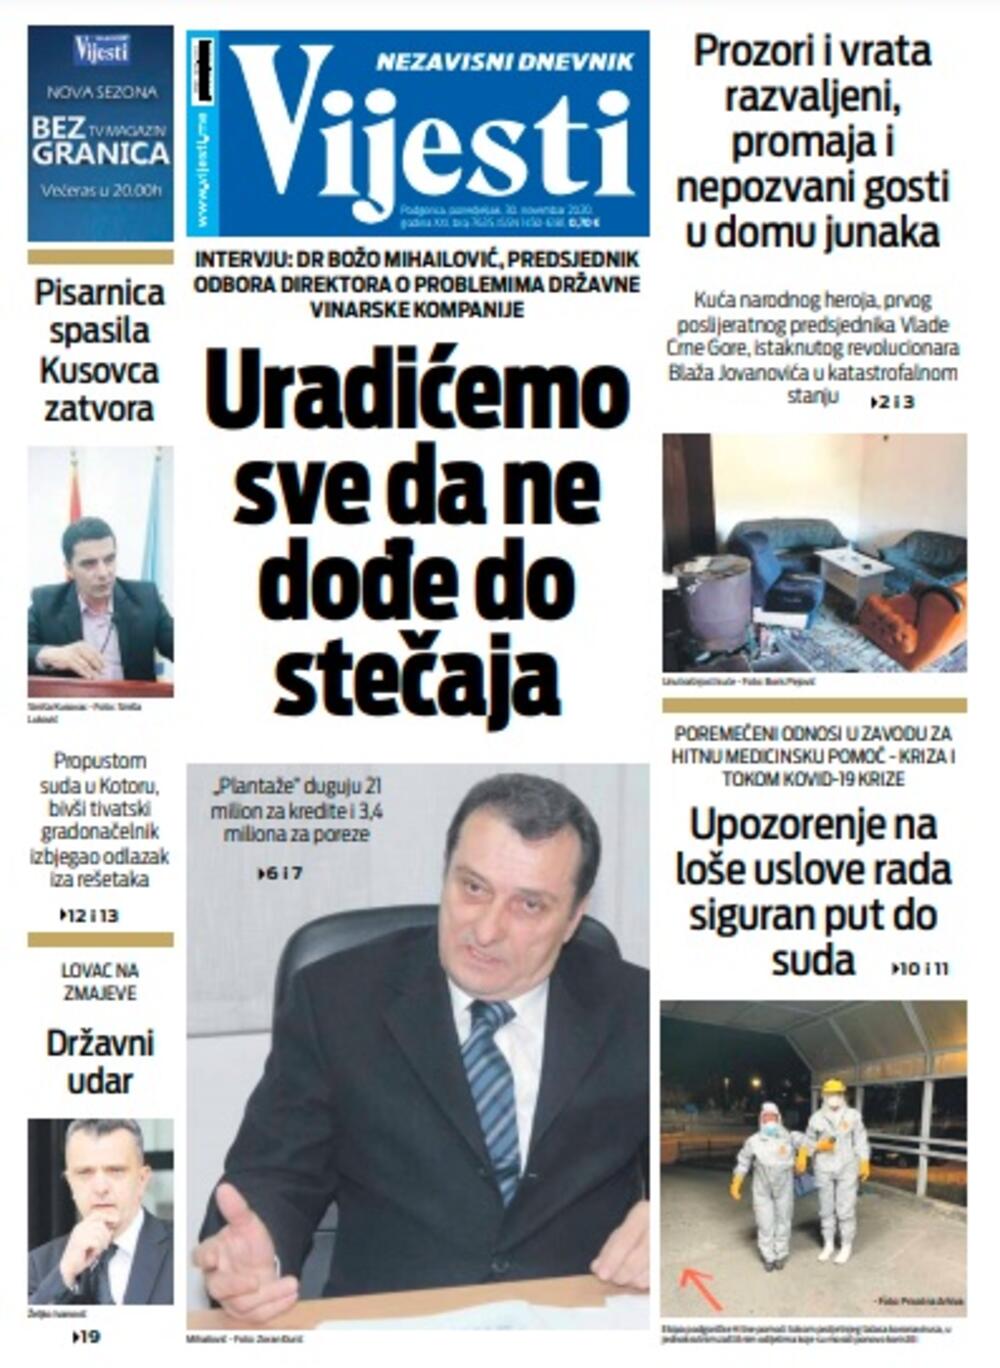 Naslovna strana "Vijesti" za ponedjeljak 30. novembar 2020. godine, Foto: Vijesti